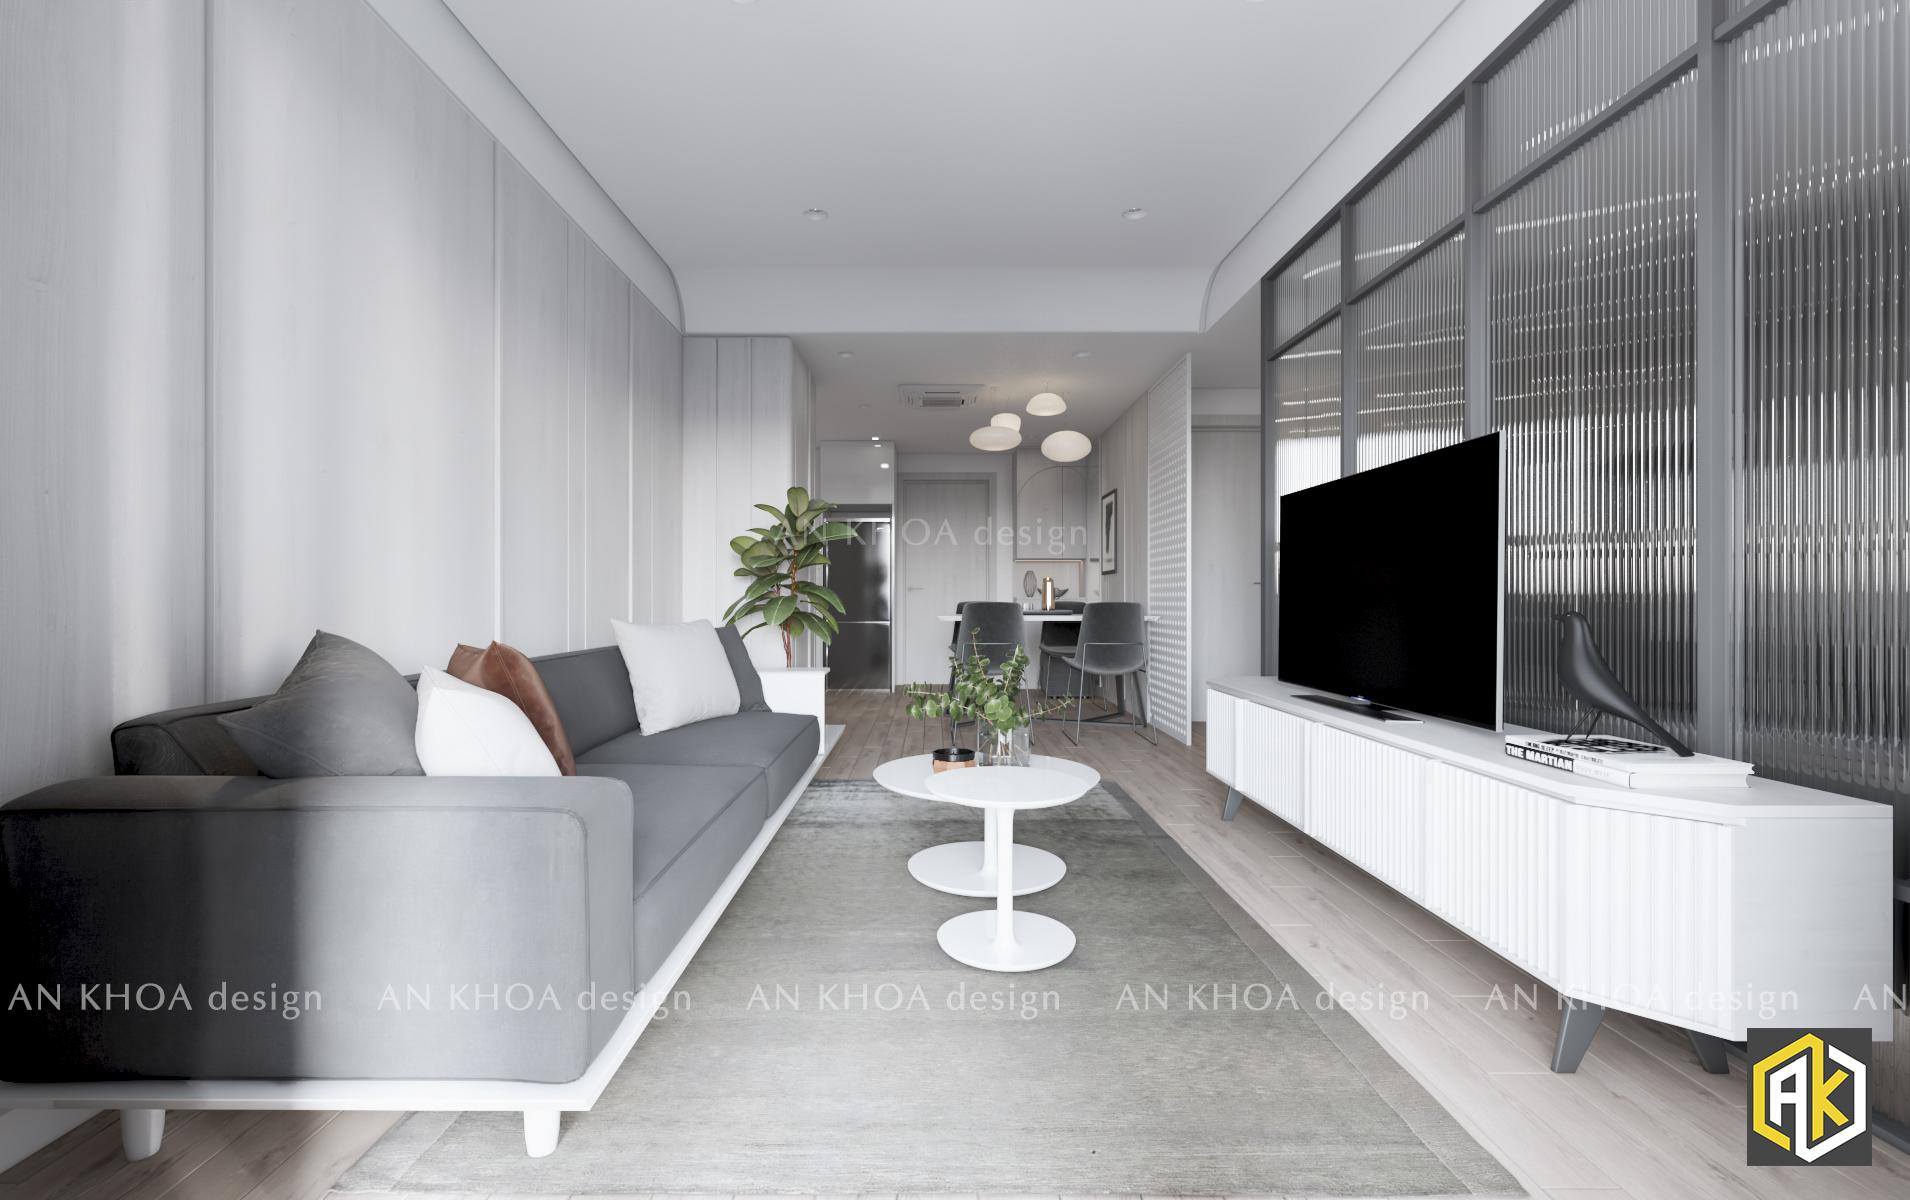 Hình minh họa thiết kế chung cư 2 phòng ngủ với tone màu trắng tuy đơn giản nhưng nội thất hiện đại cao cấp